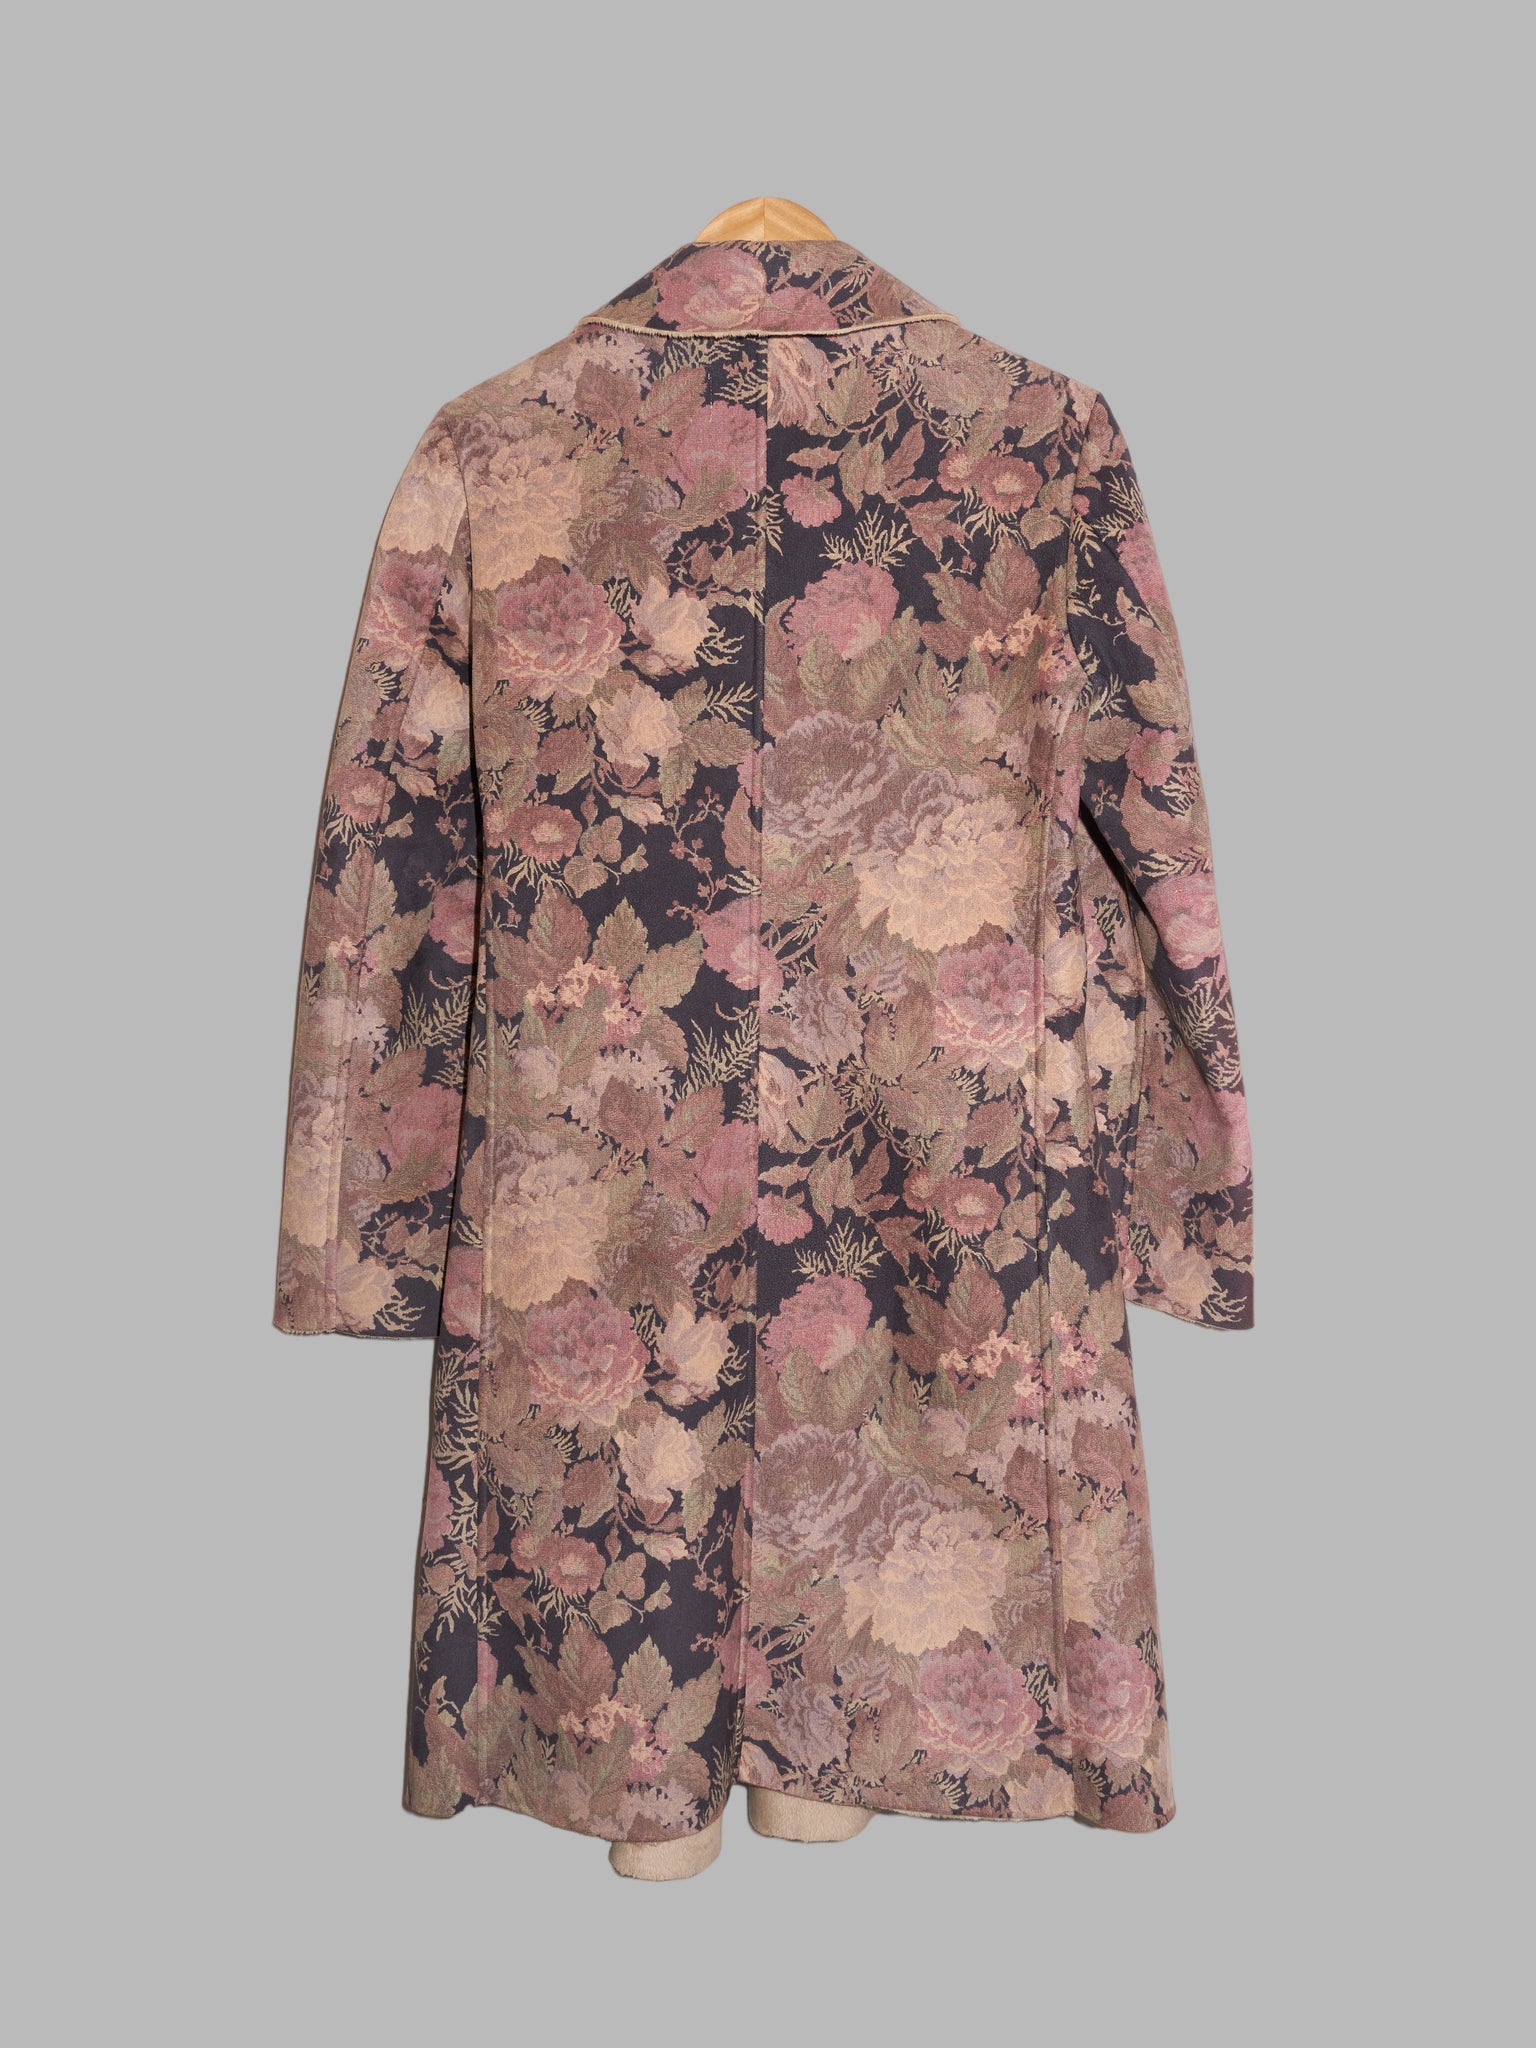 Yoichi Nagasawa 1990s gobelin floral pattern five button coat - size 38 S